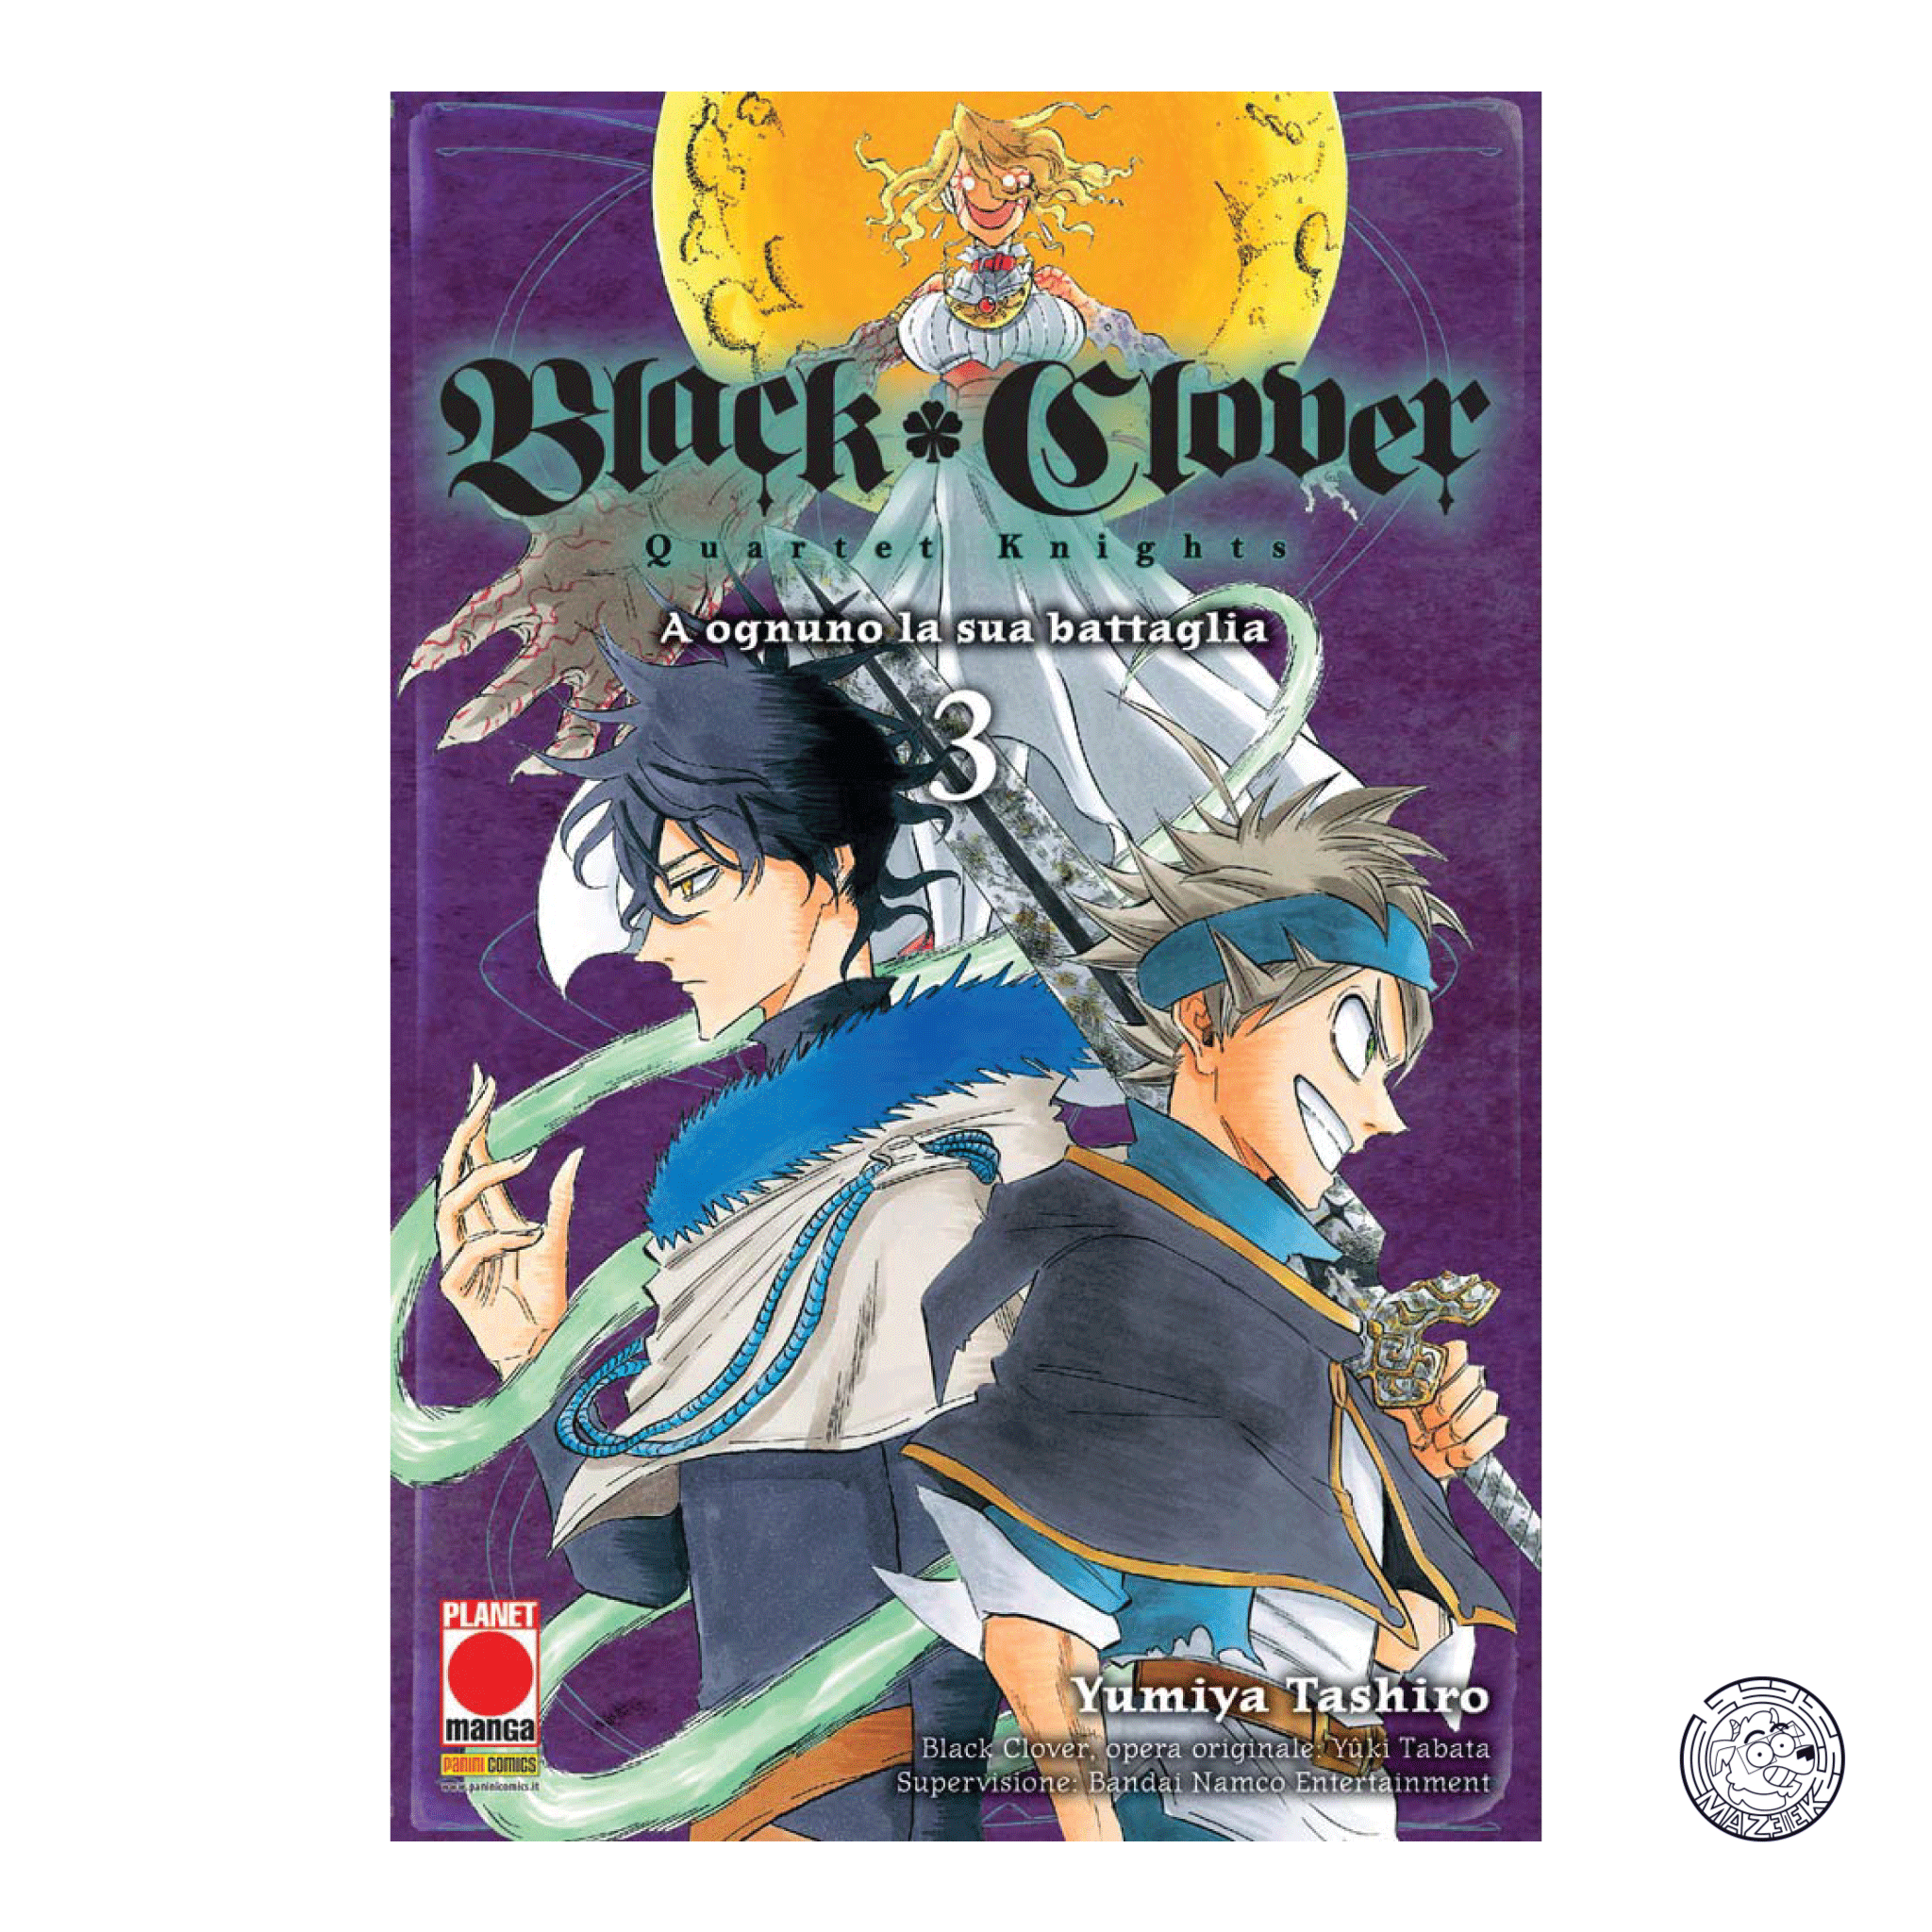 Black Clover Quartet Knights 03